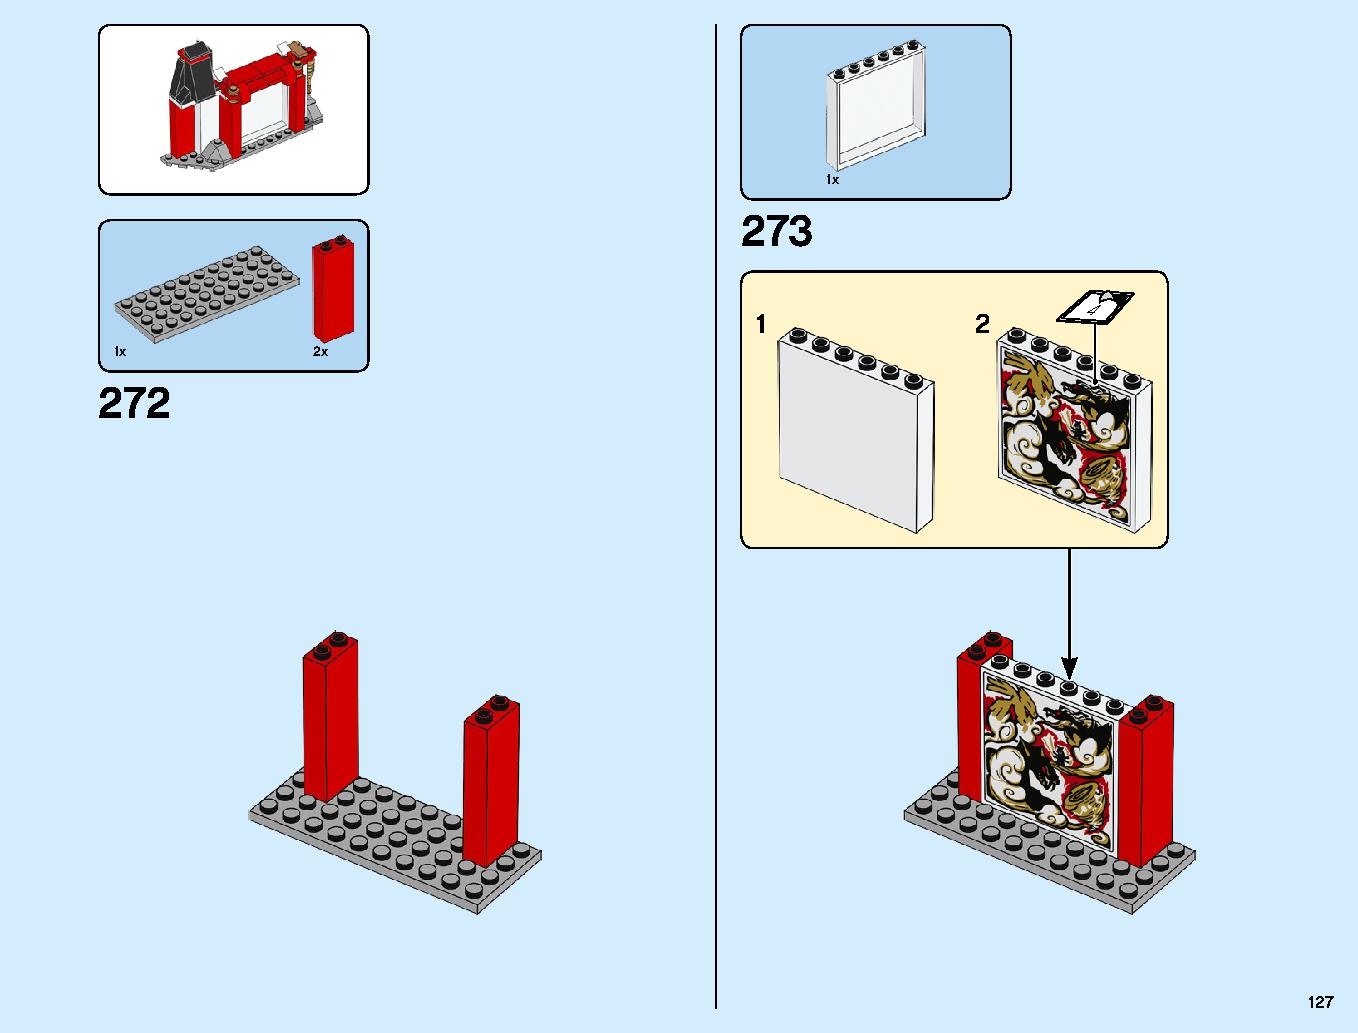 ニンジャ道場 70670 レゴの商品情報 レゴの説明書・組立方法 127 page